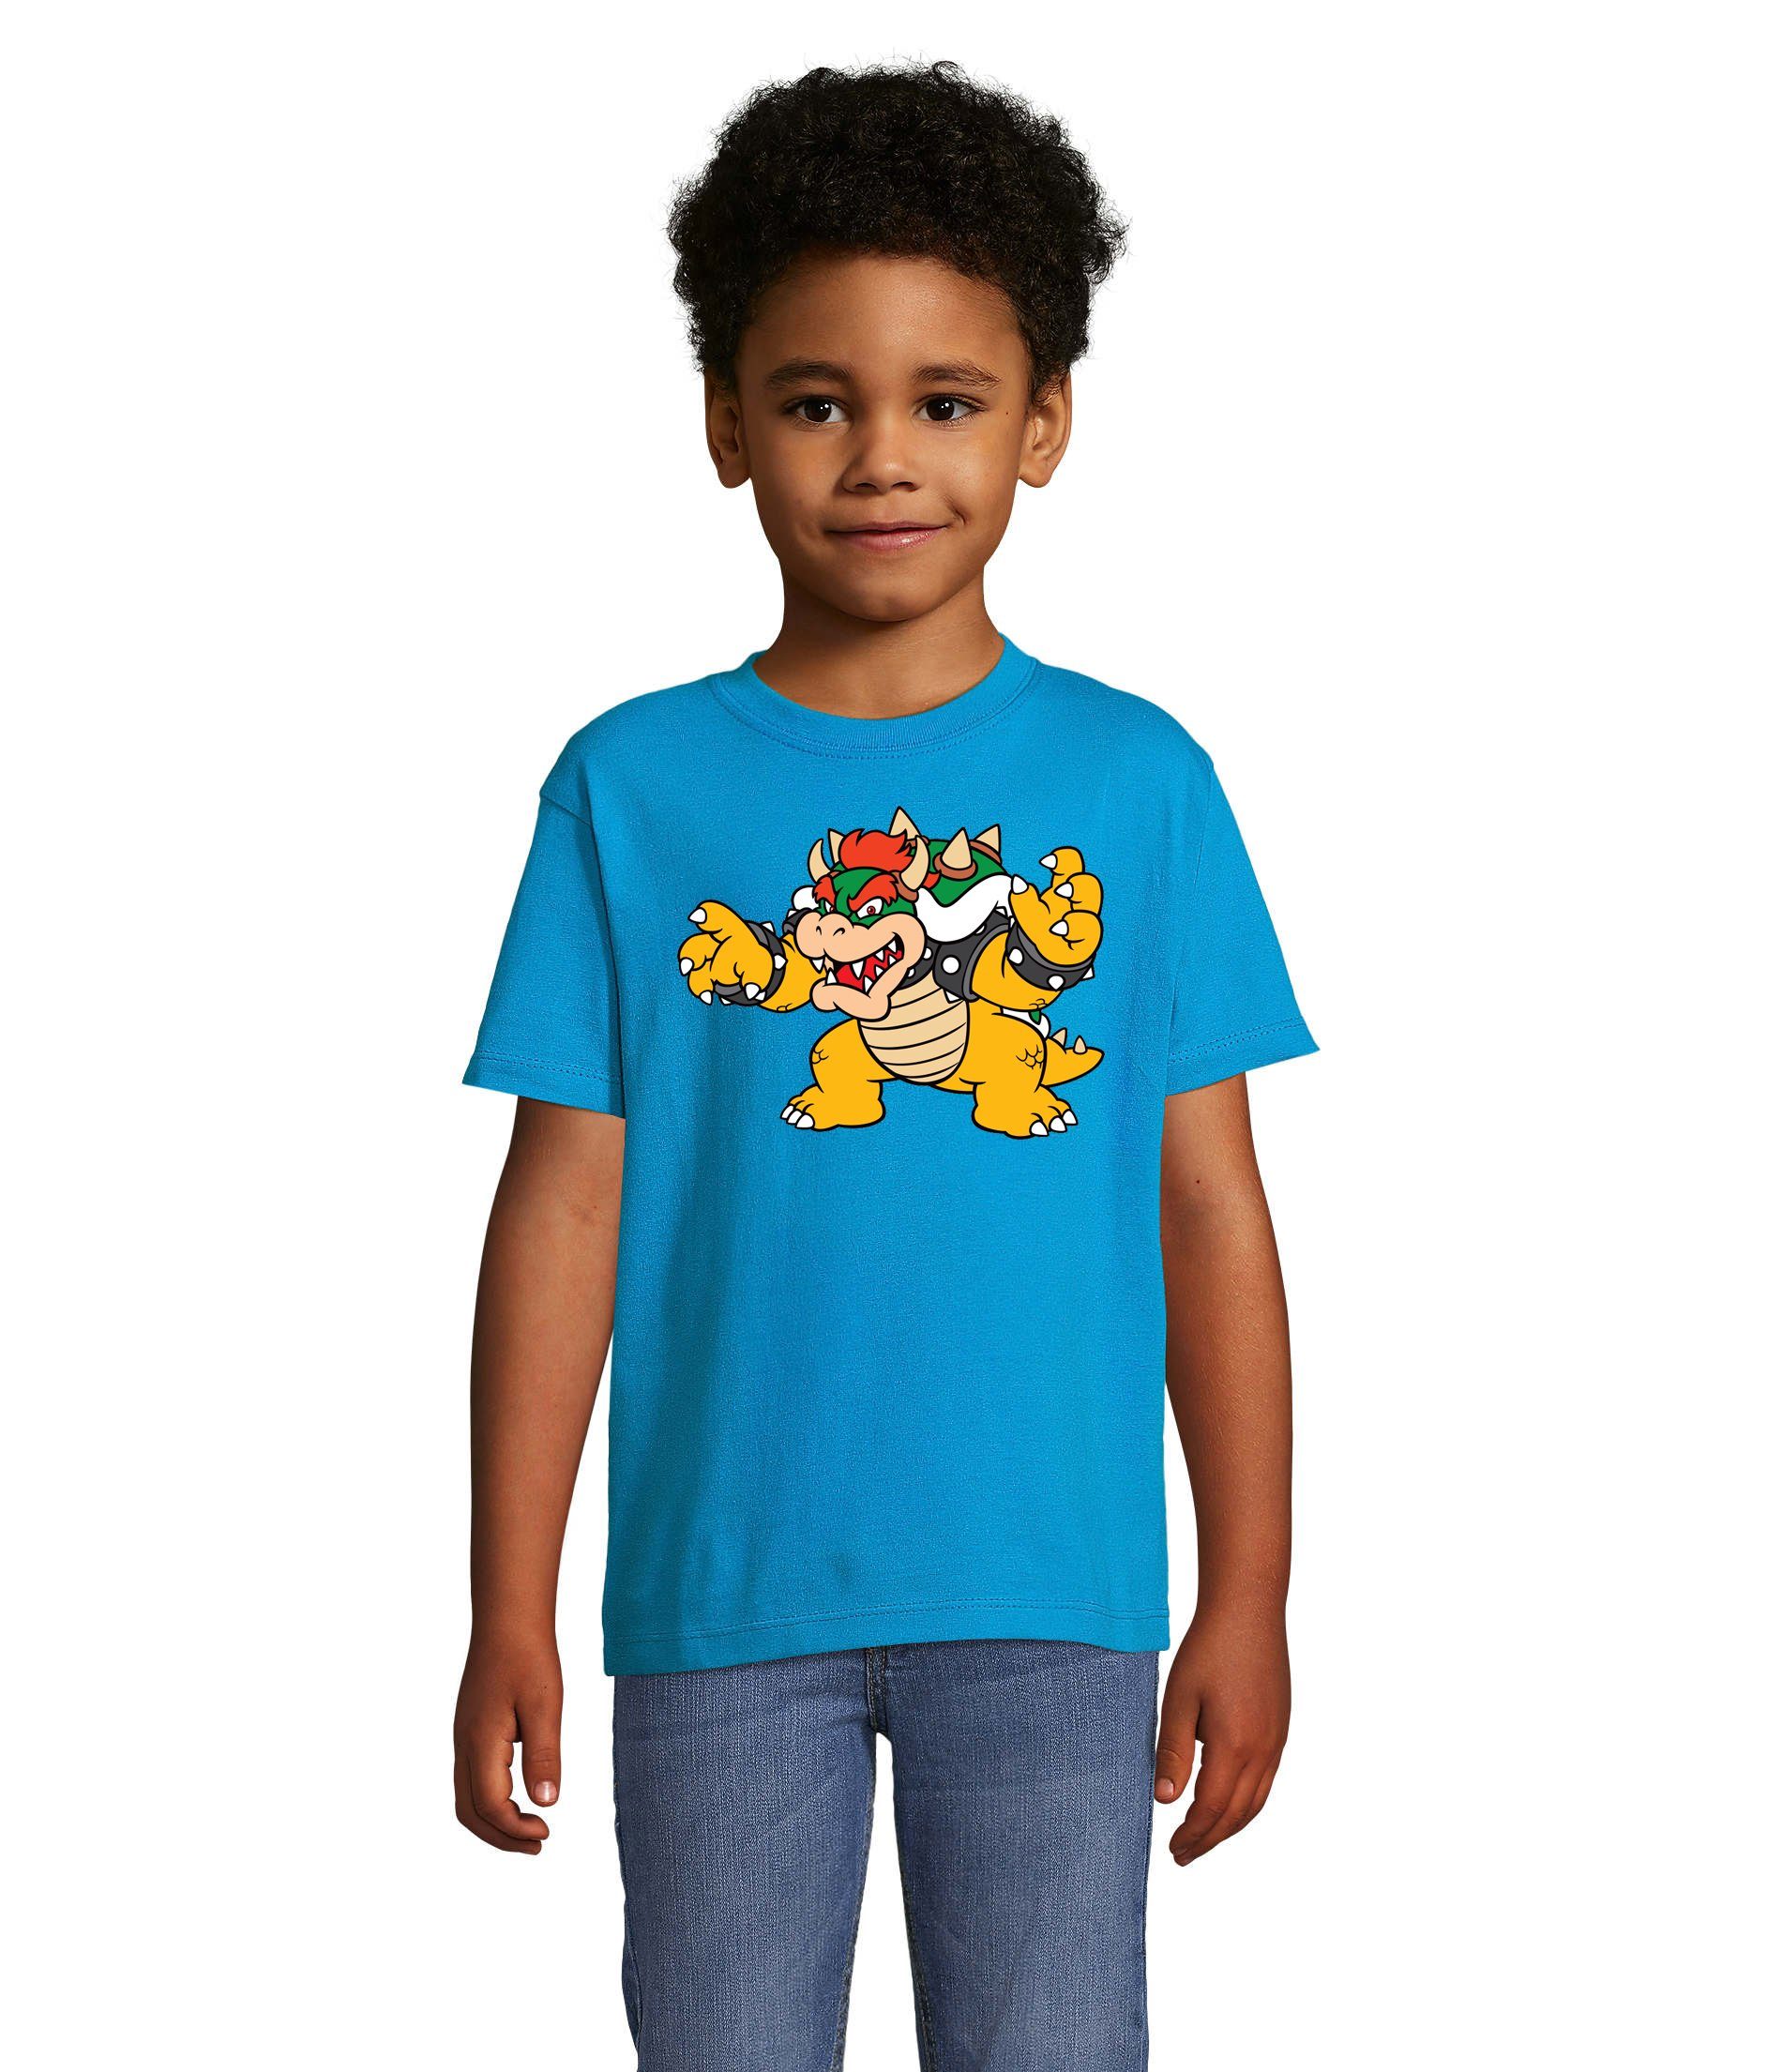 T-Shirt Konsole Blondie Bowser Yoshi Blau & Game Kinder Brownie Nintendo Gamer Mario Luigi